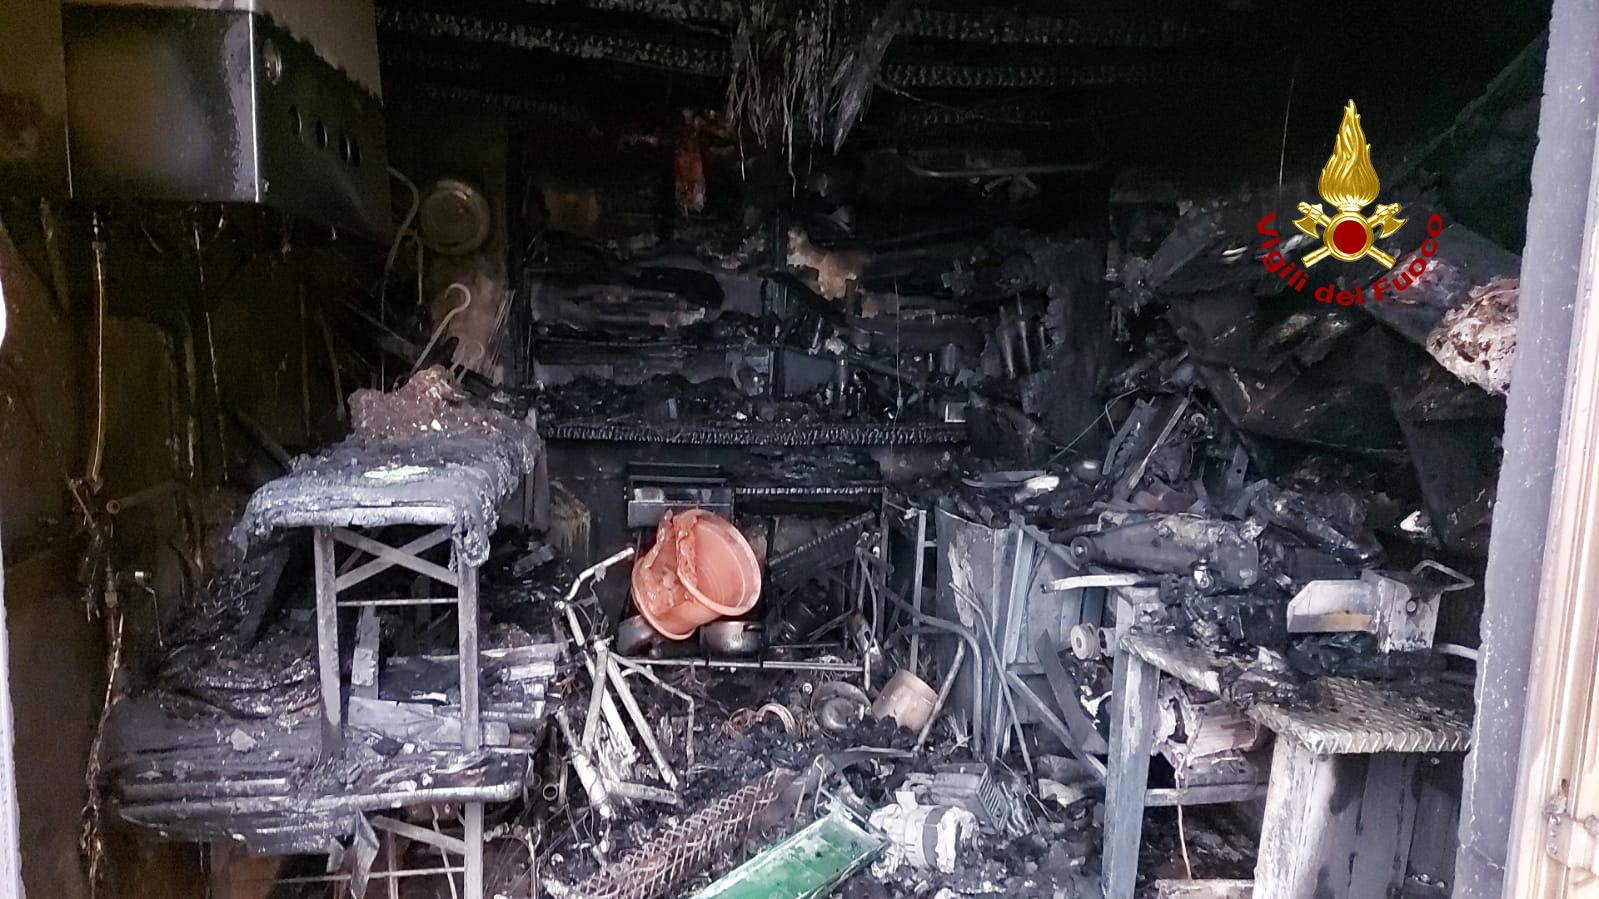 Le foto del garage laboratorio bruciato ad Asiago